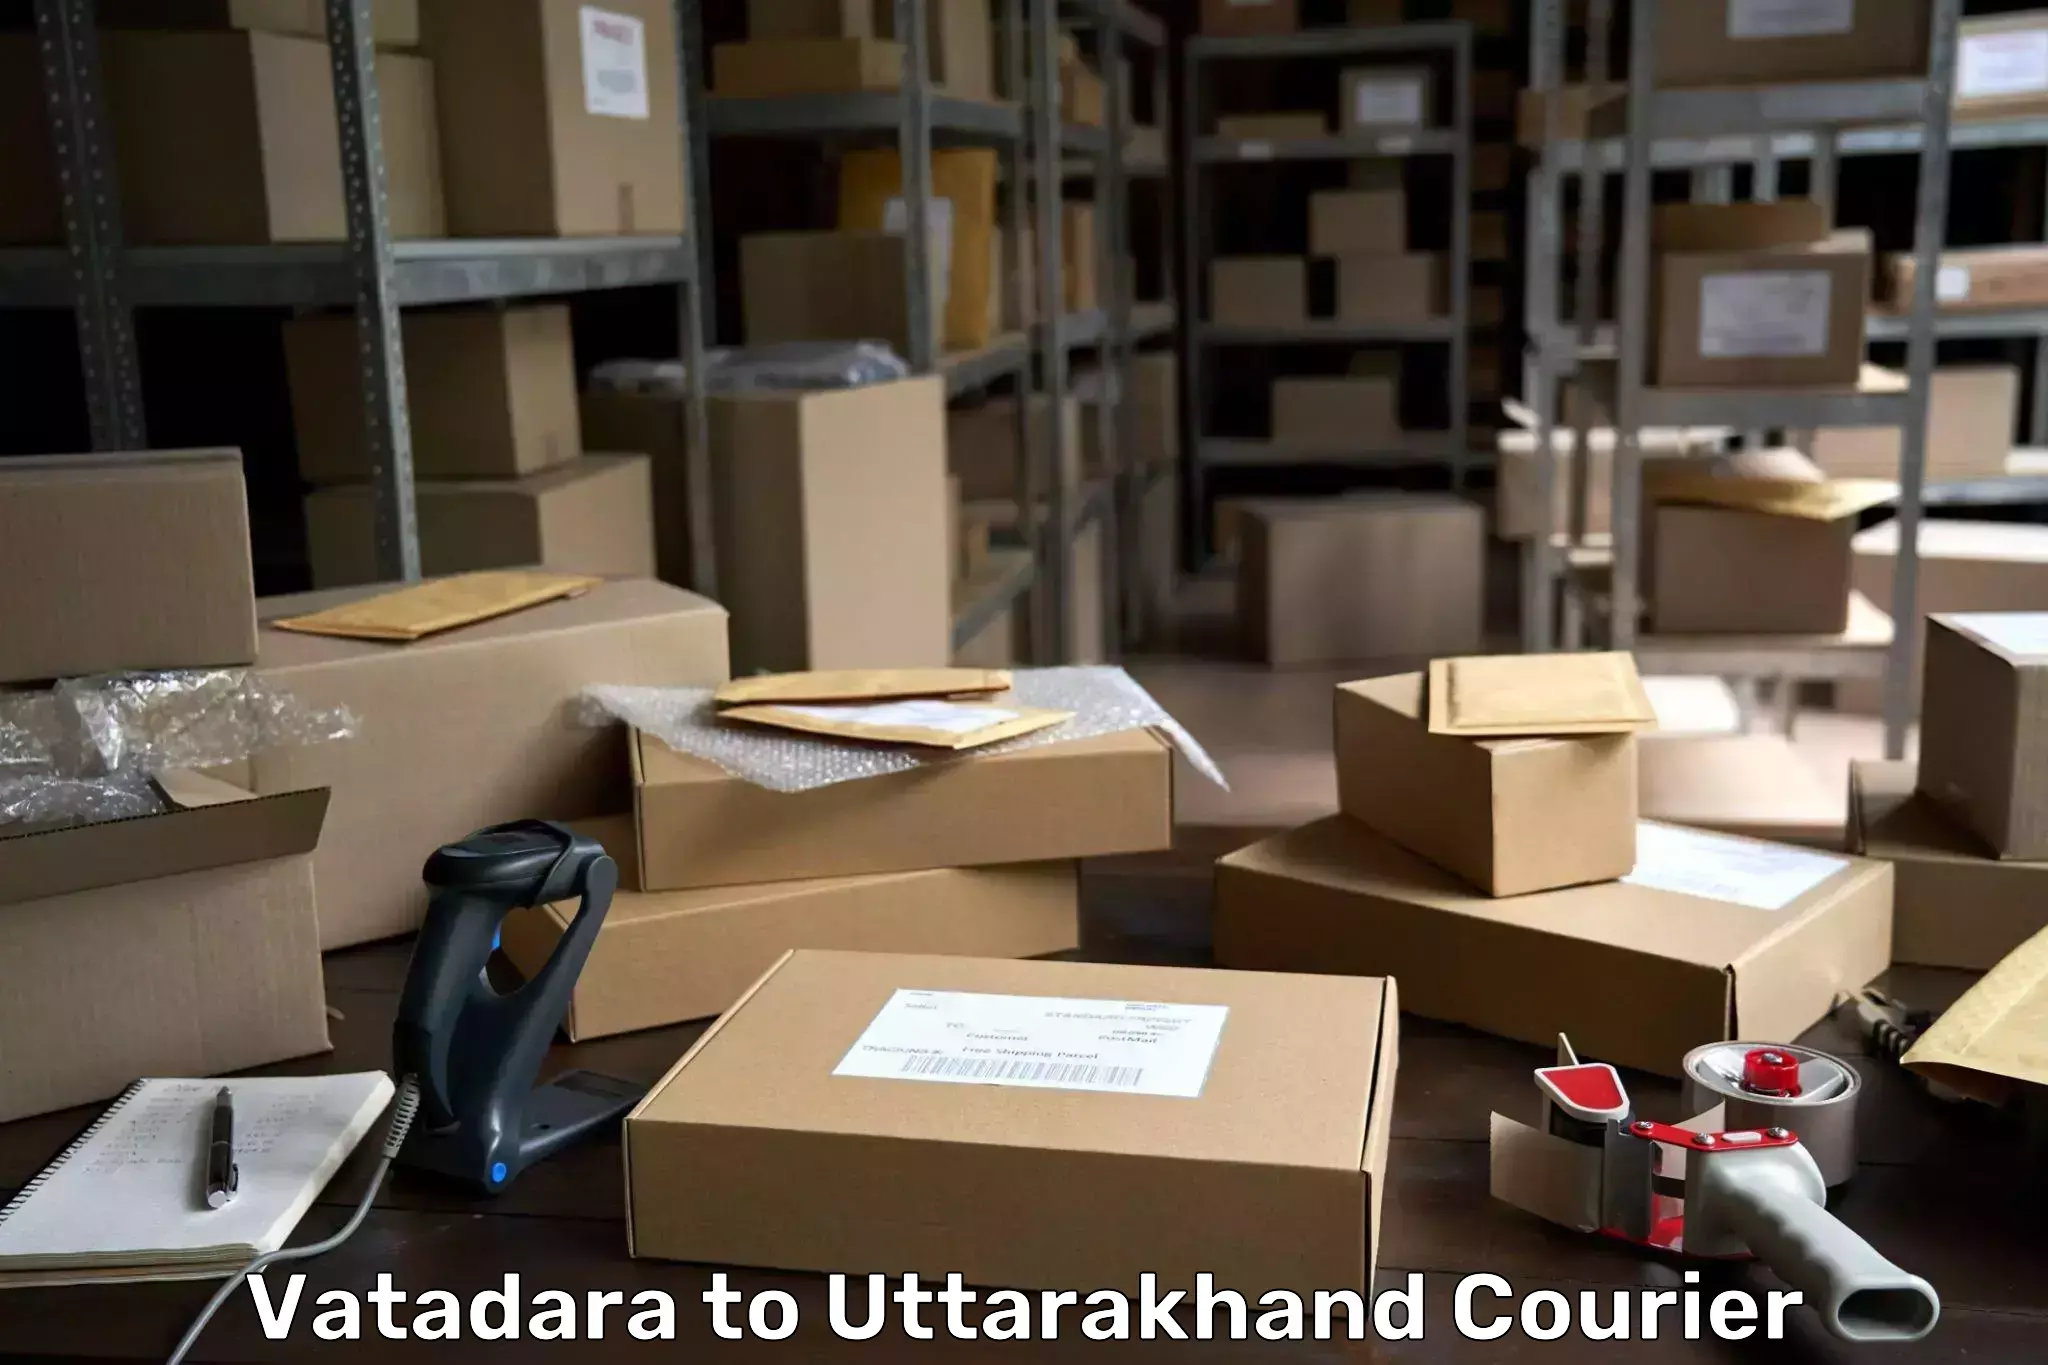 Cost-effective courier options Vatadara to IIT Roorkee